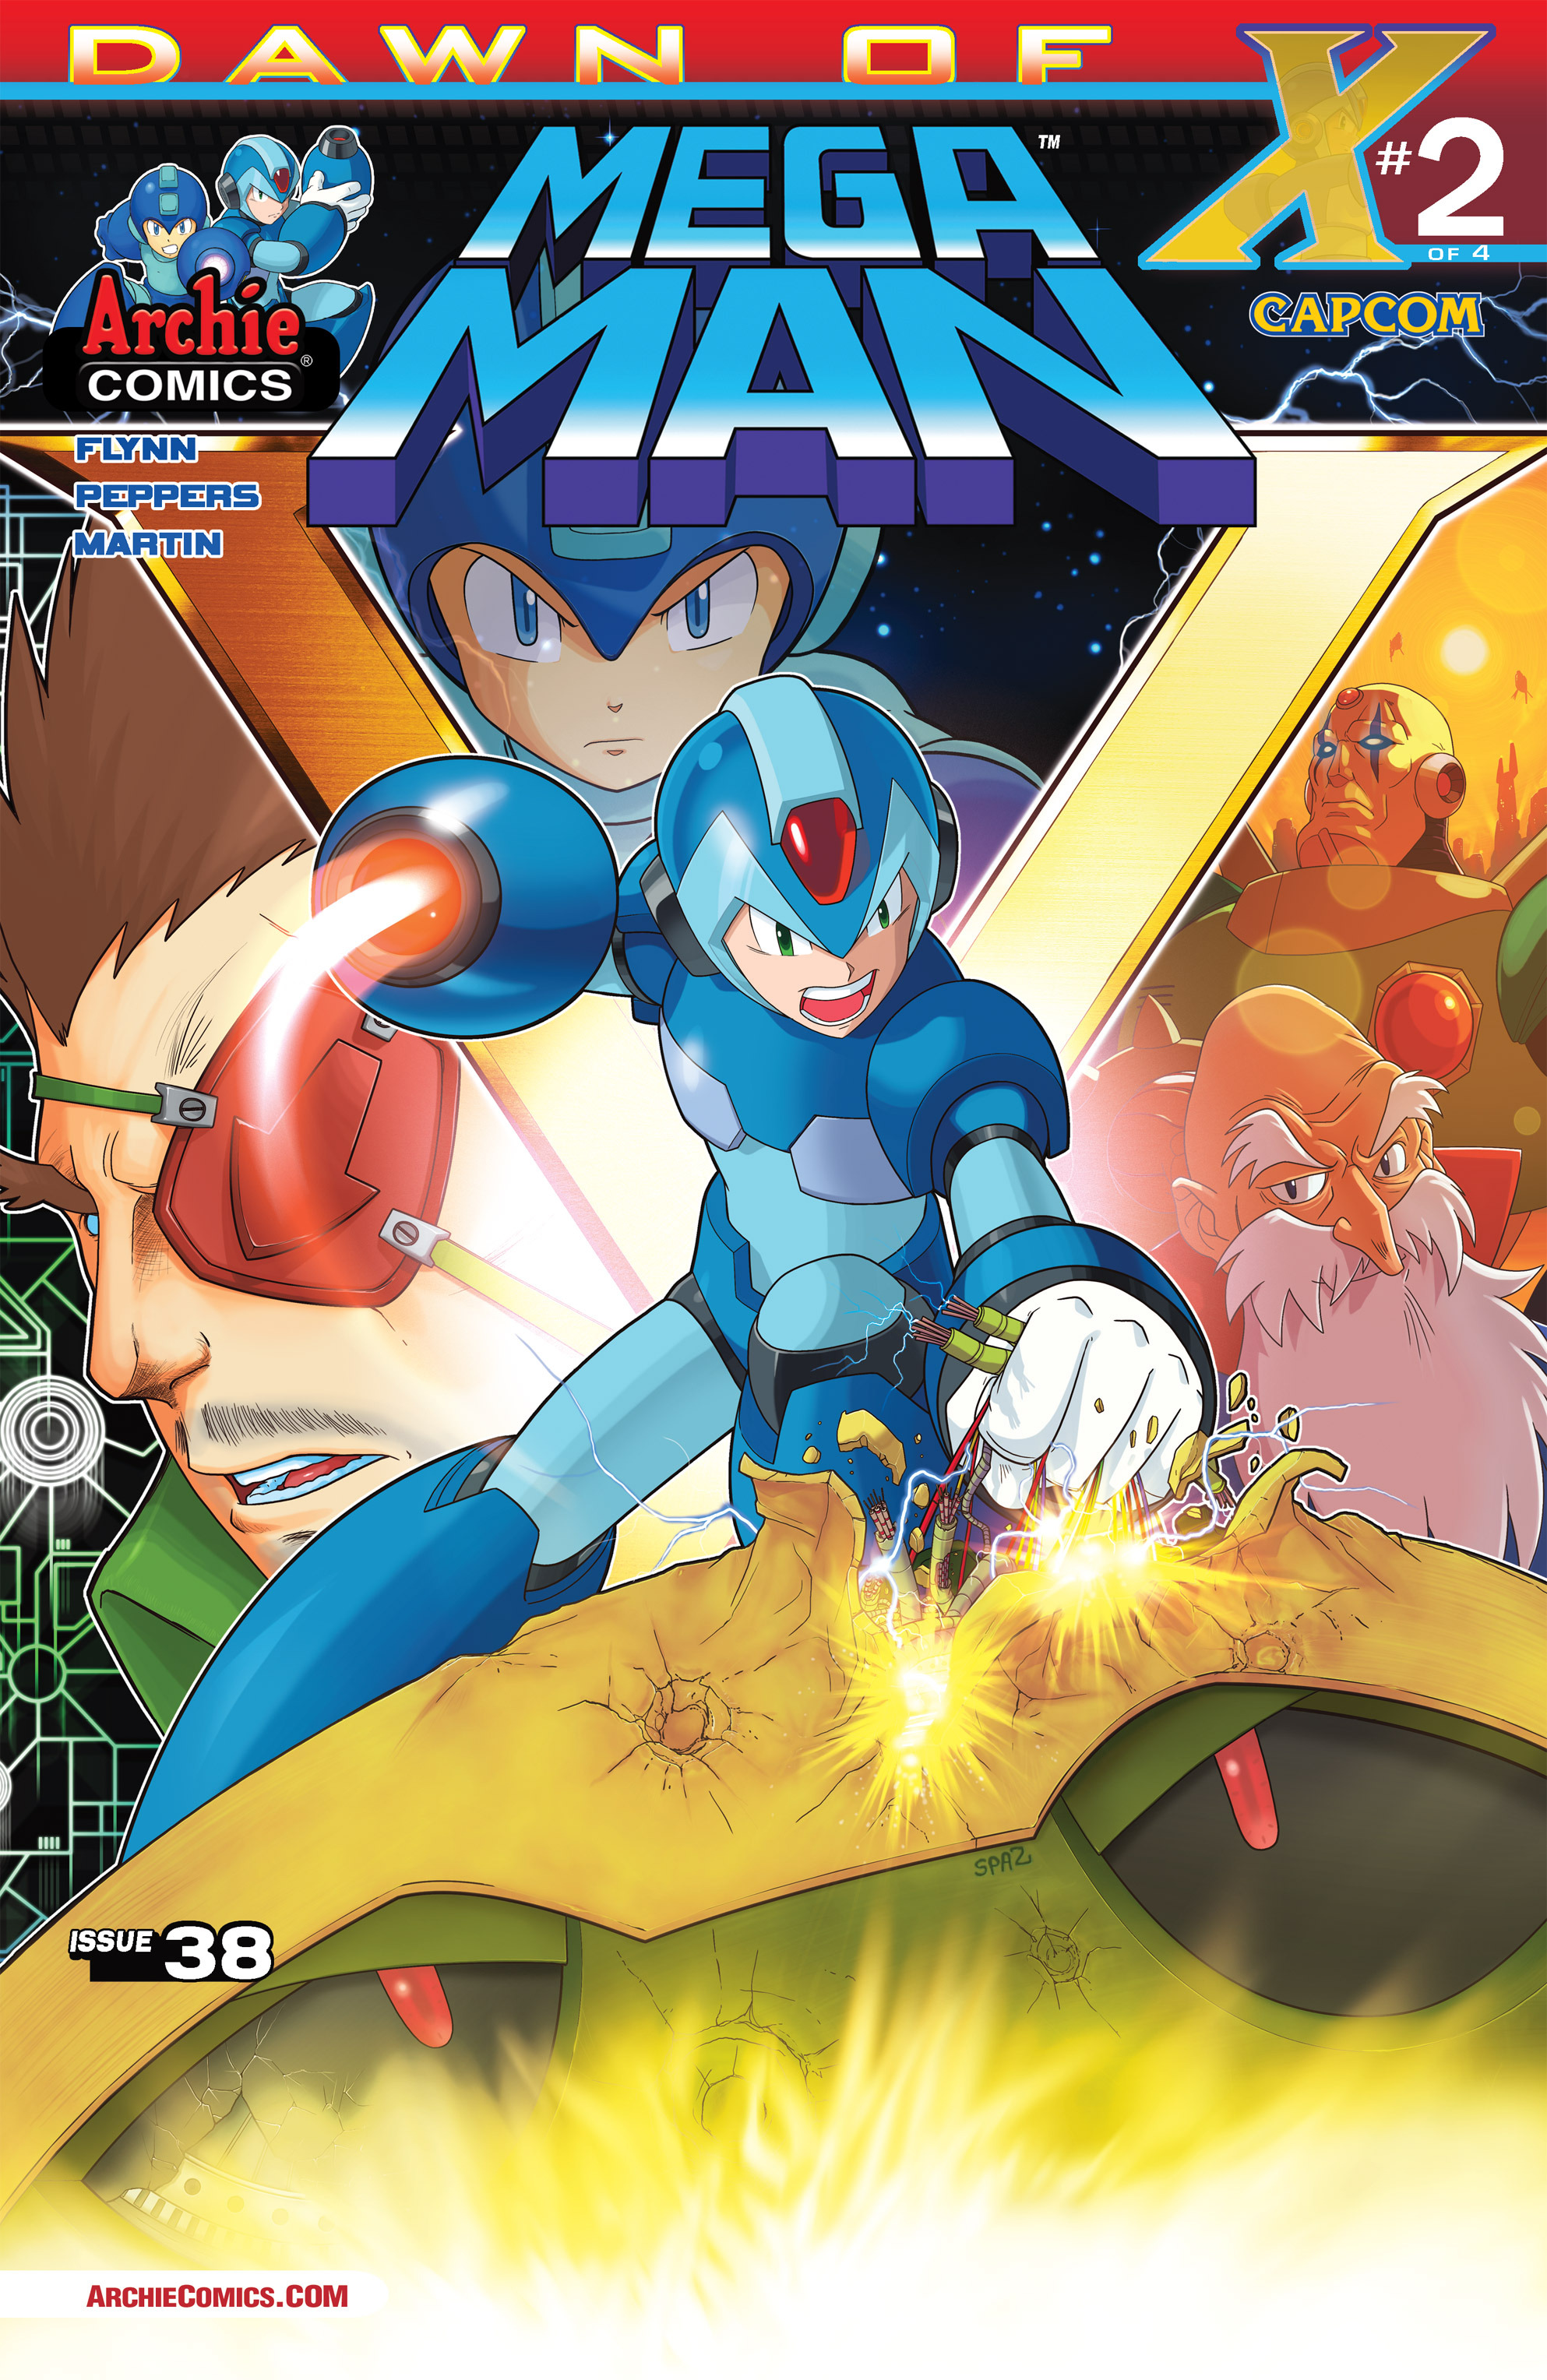 Mega Man Issue 38 Archie Comics Mmkb The Mega Man Knowledge Base Mega Man 10 Mega Man X 7925